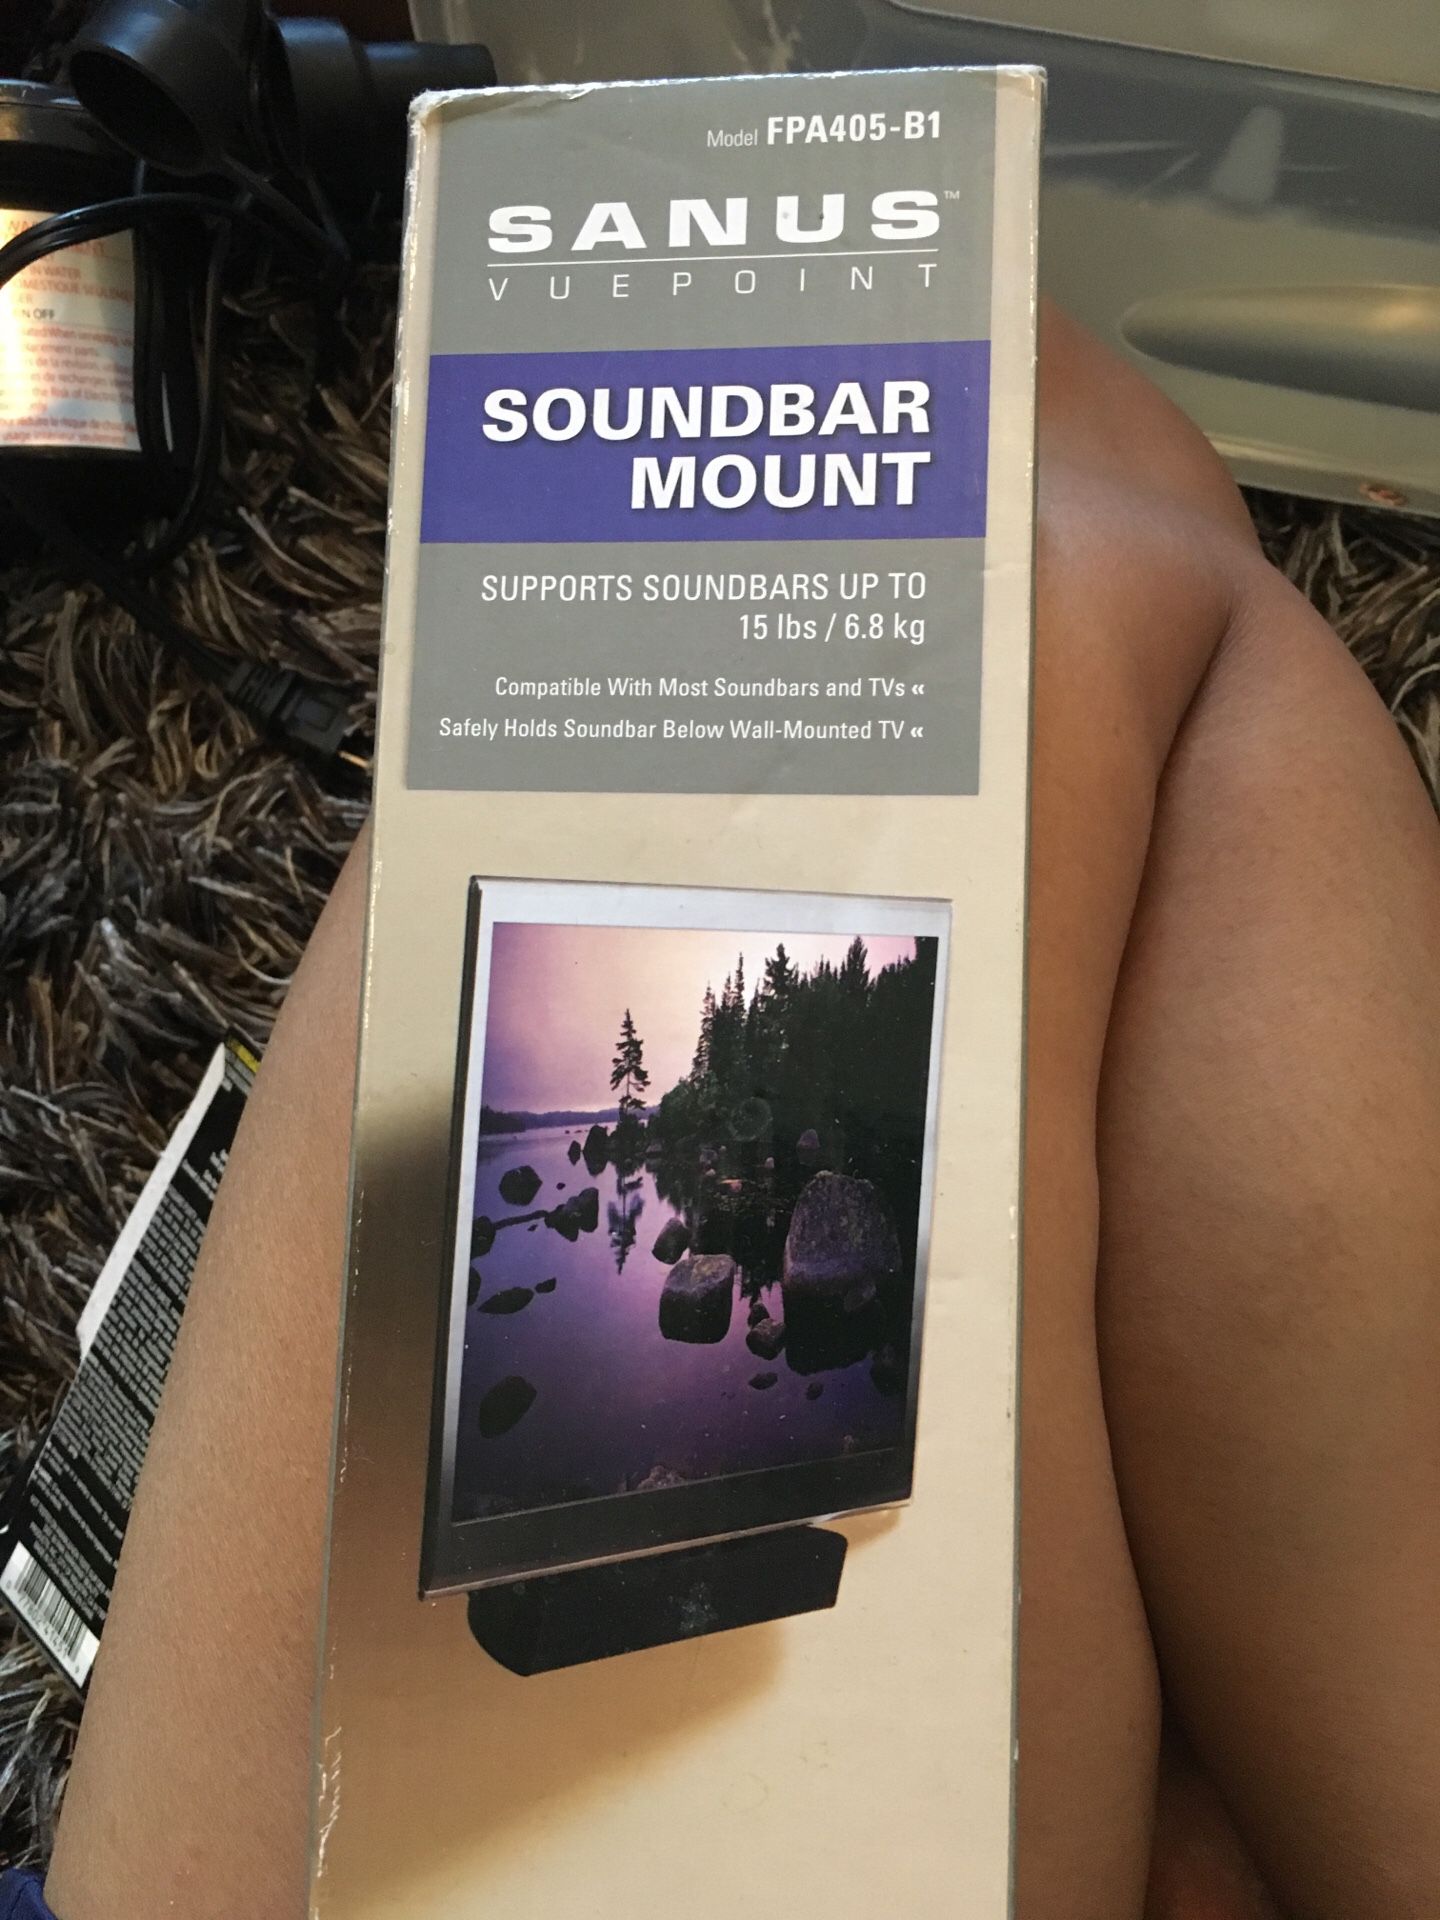 SoundBar Mount supports 15lb/6.8 kg